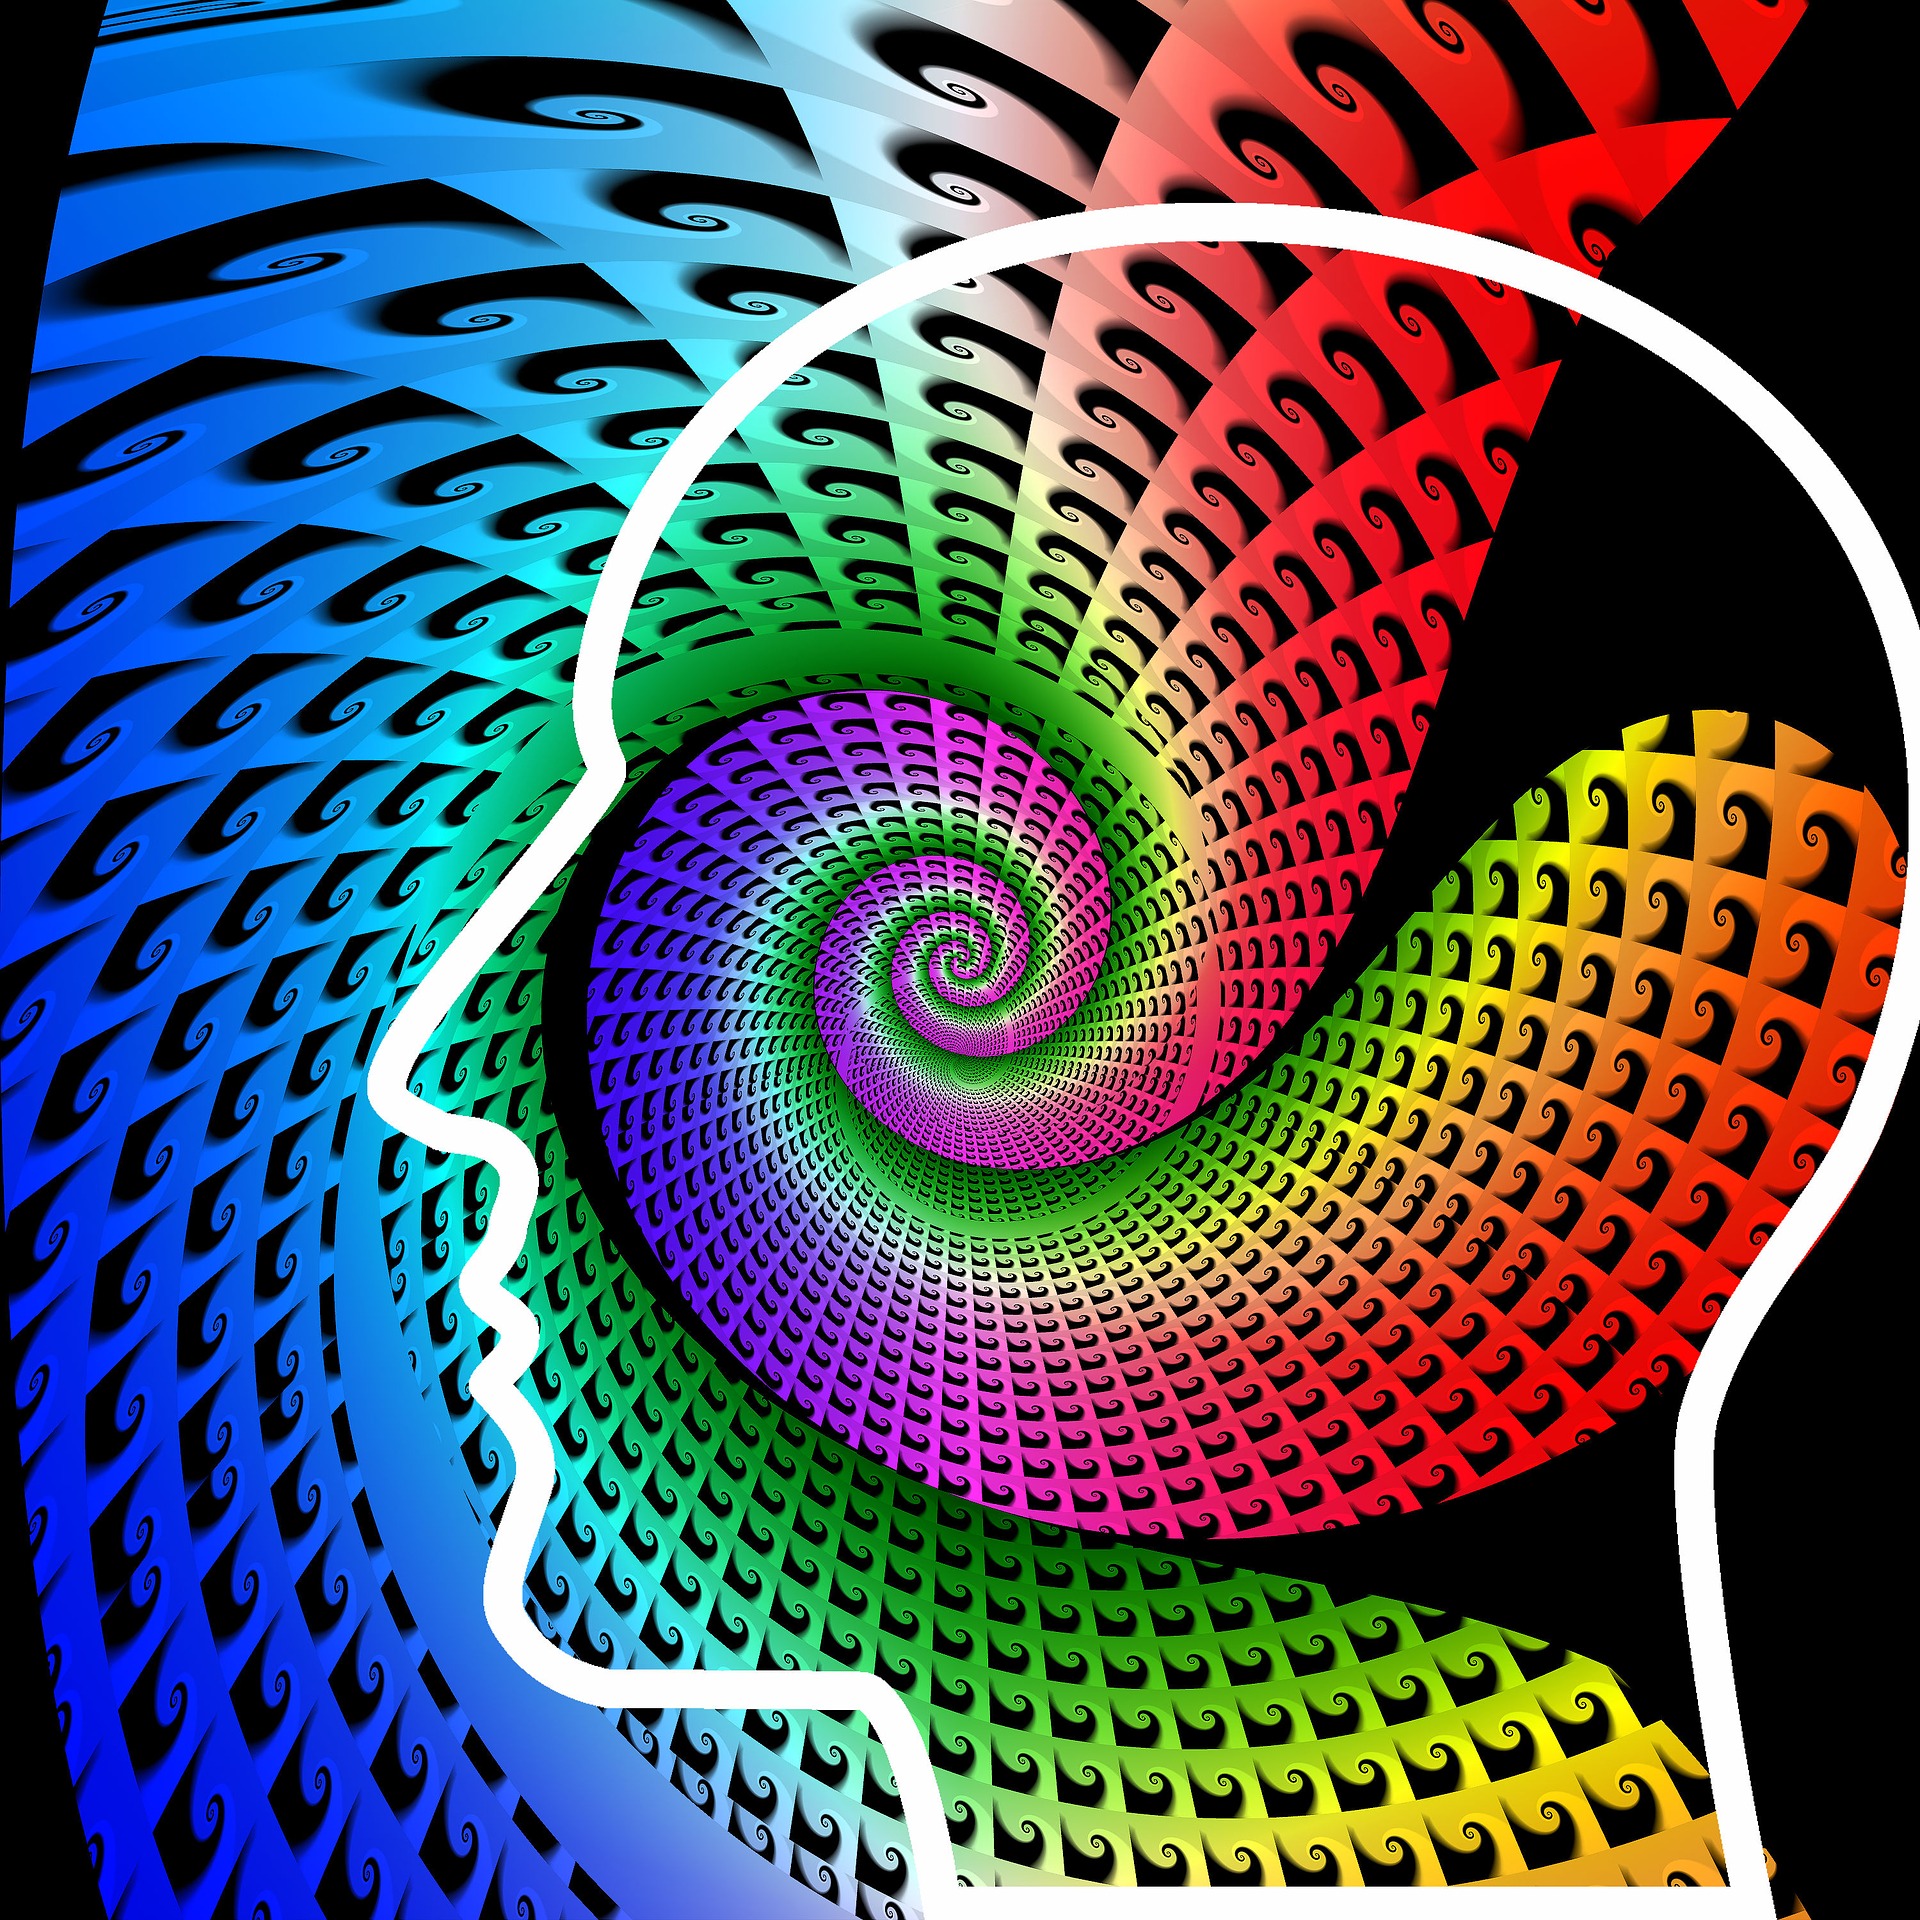 LGráfico de una silueta de cabeza humana de perfil de la cual surge un espiral colorido.